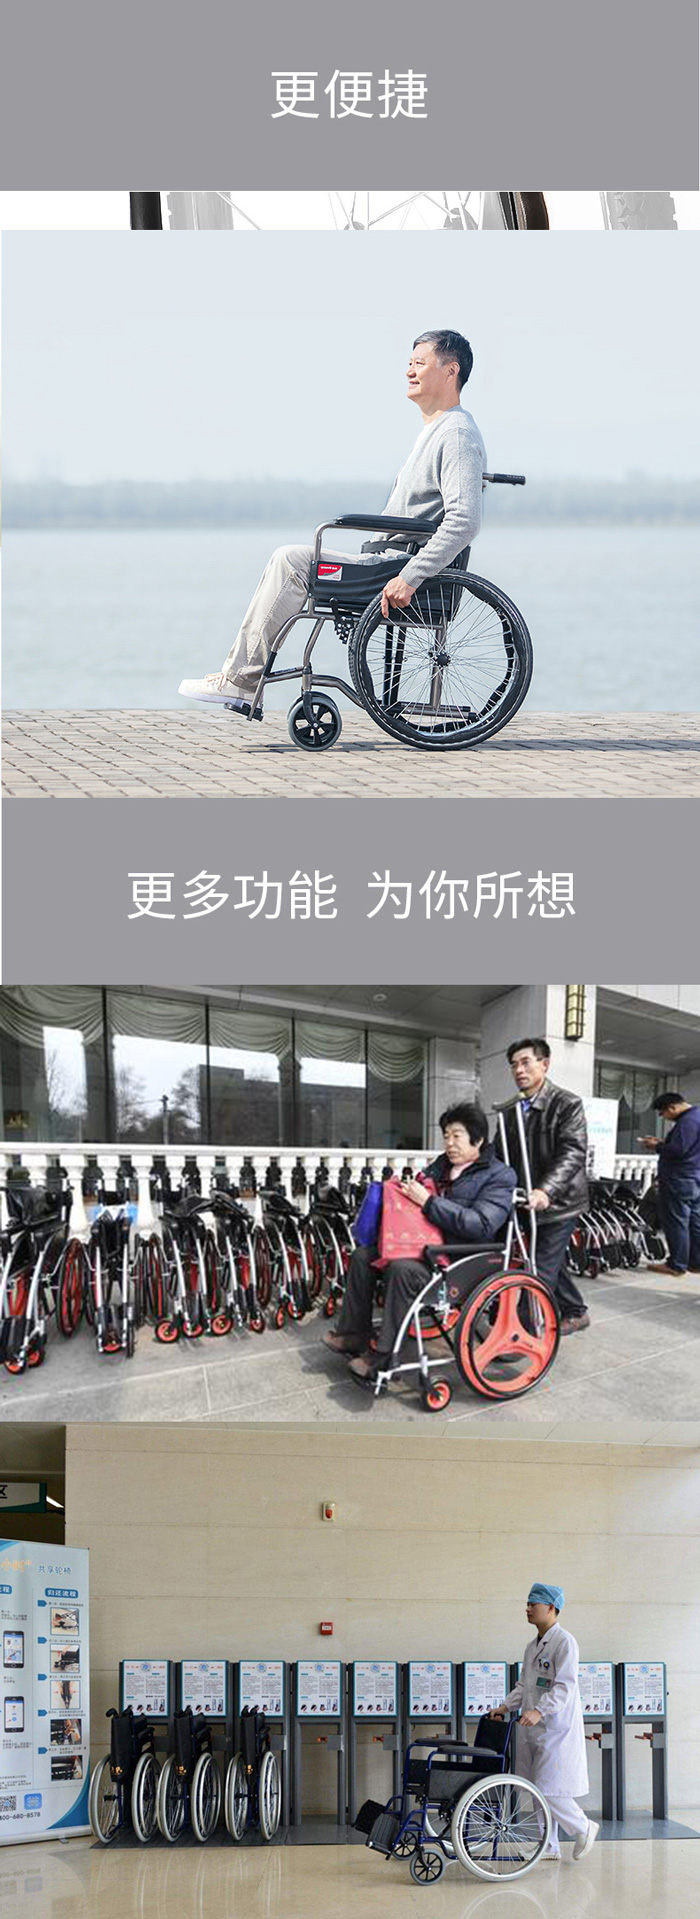 共享轮椅3.jpg